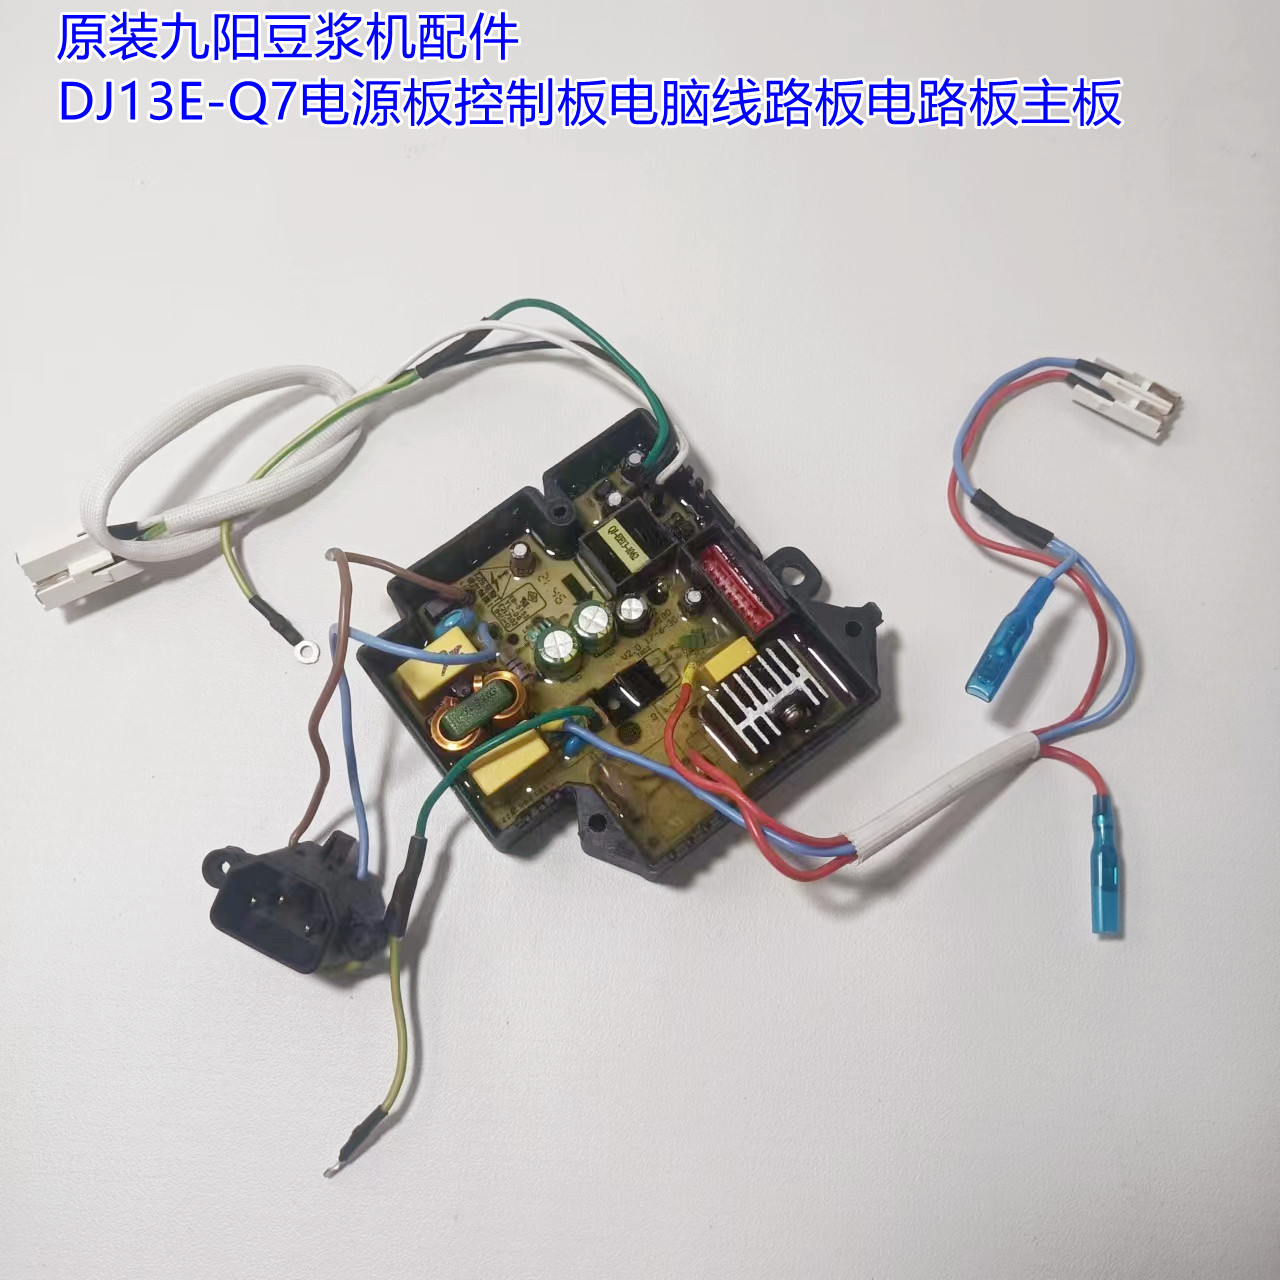 原装九阳豆浆机配件DJ13E-Q7电源板控制板电脑线路板电路板主板